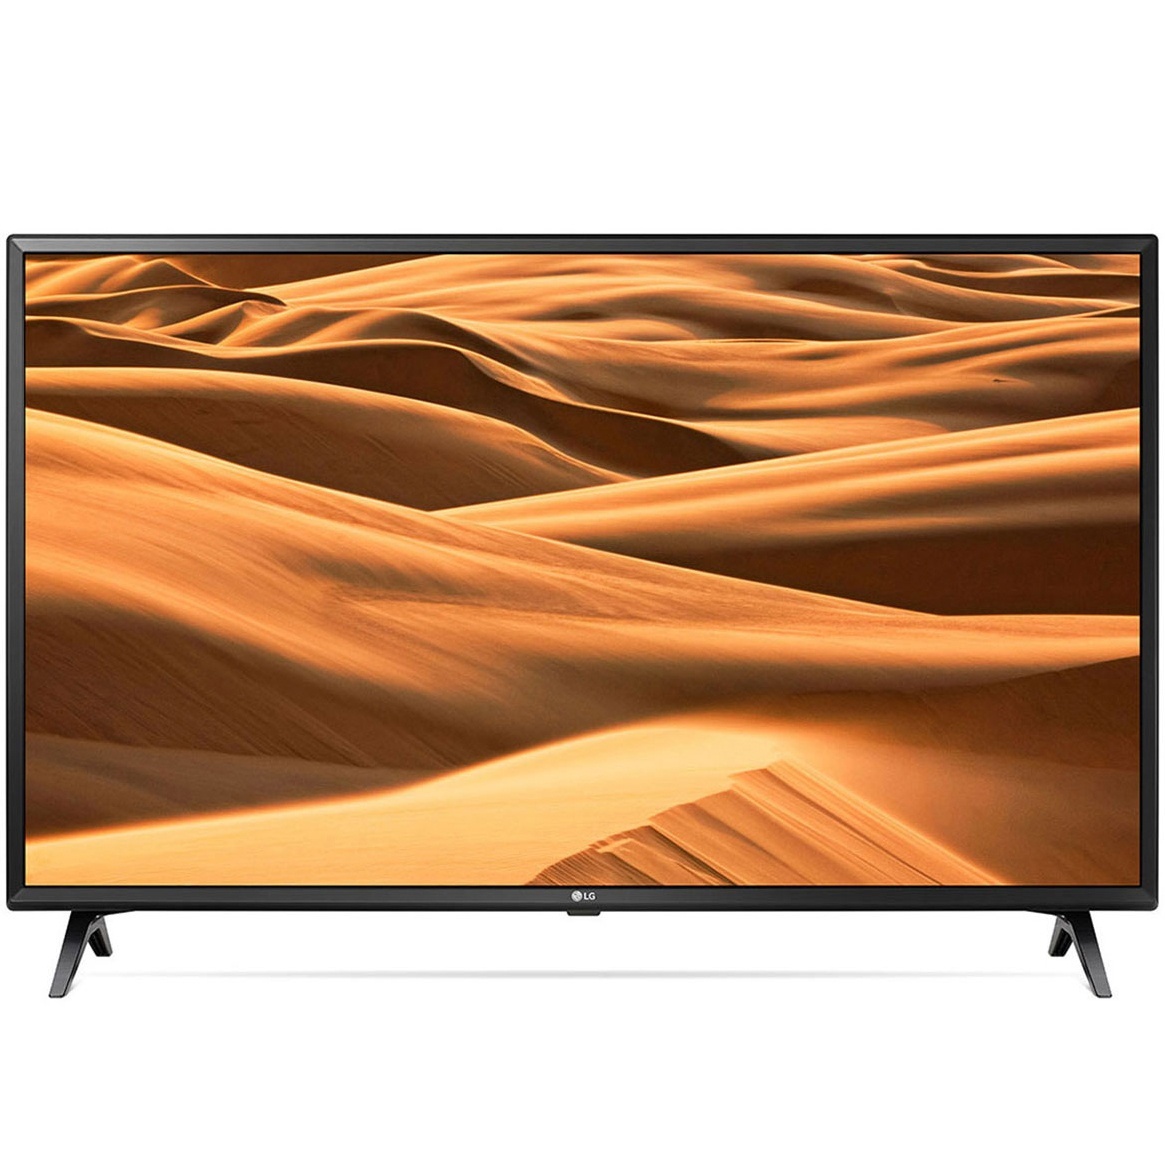 LG UHD TV 70 inch 4K Smart UHD TV HDR 70UM7300PTA chính hãng